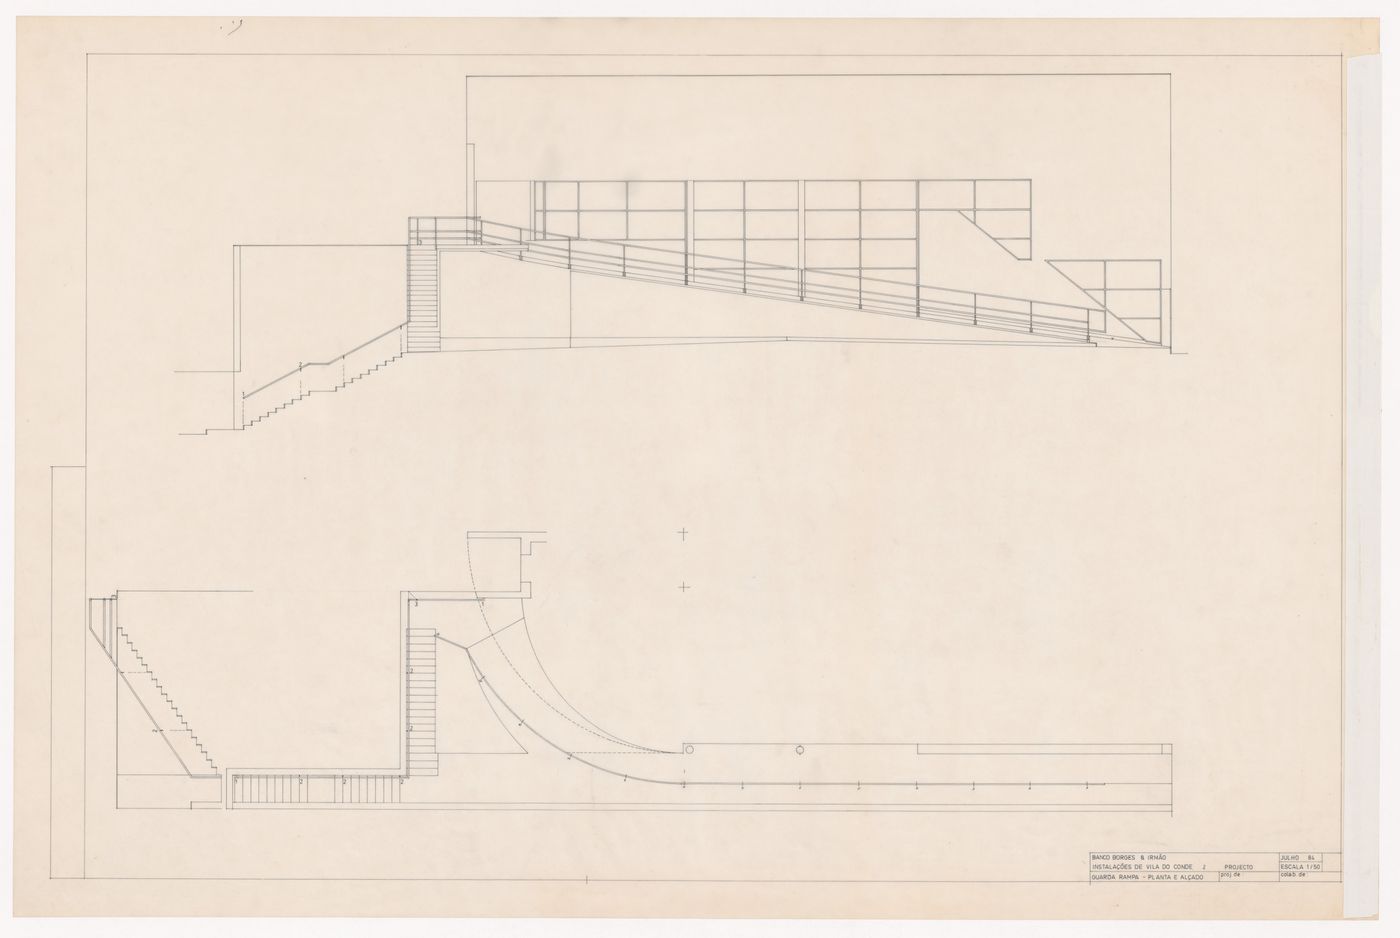 Plan and elevation for Banco Borges & Irmão II [Borges & Irmão bank II], Vila do Conde, Portugal